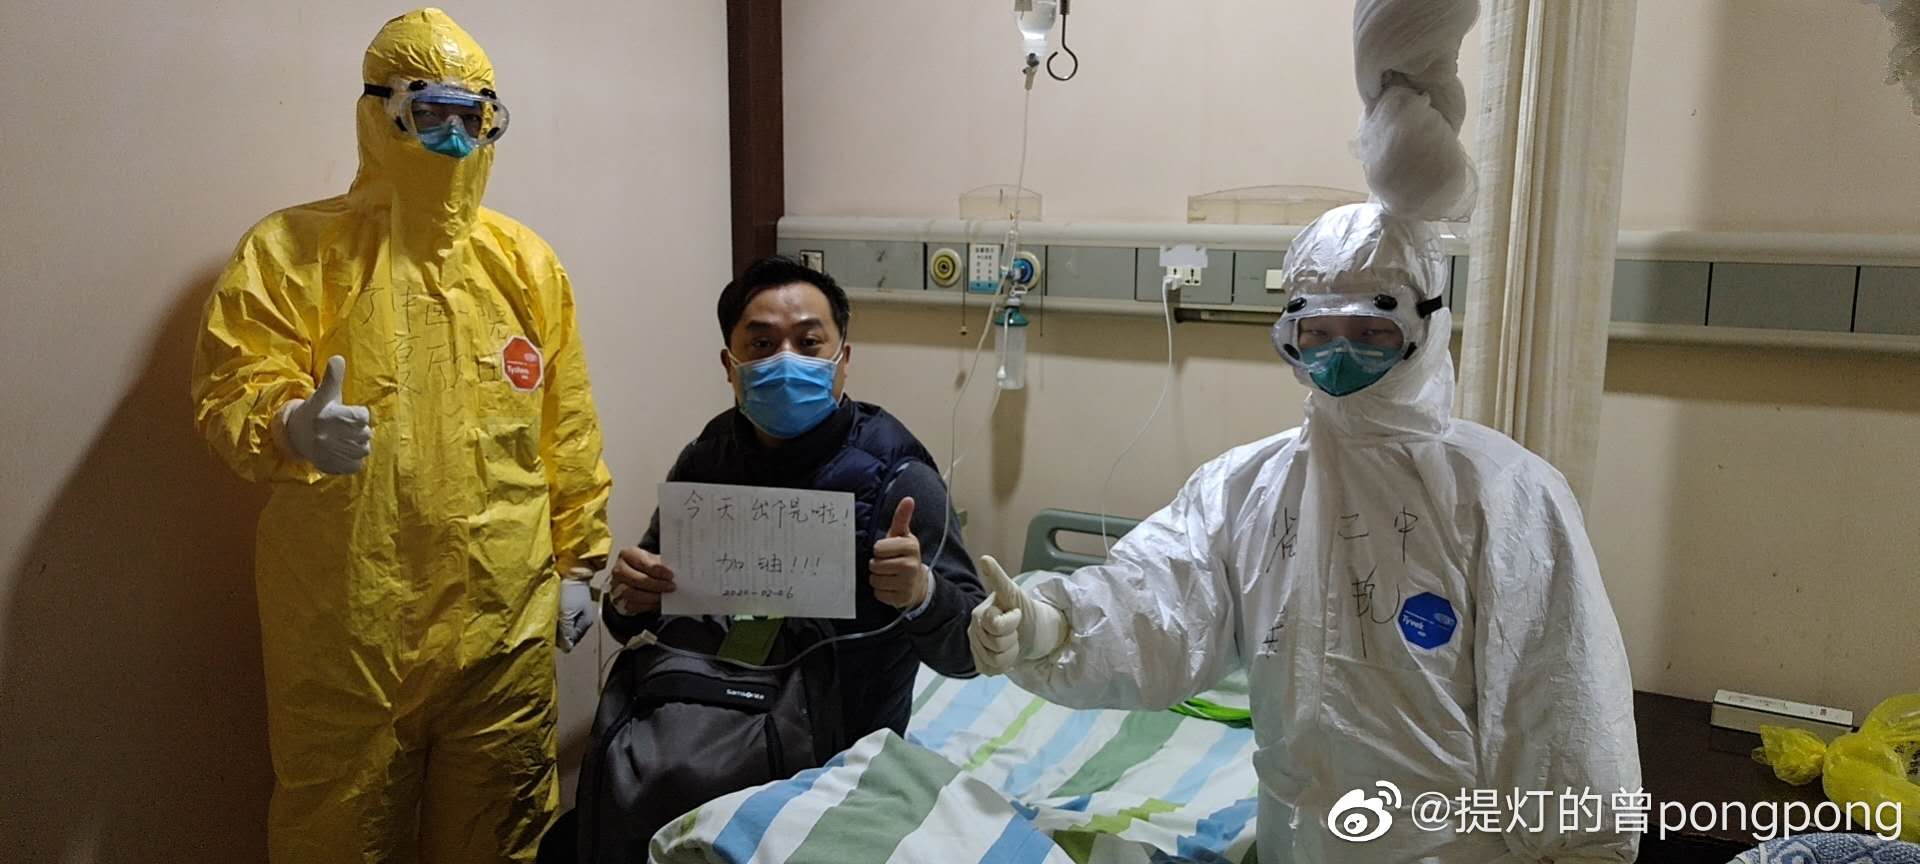 ▲曾萍与同事、患者的合影。图片来源：@提灯的曾pongpong 微博